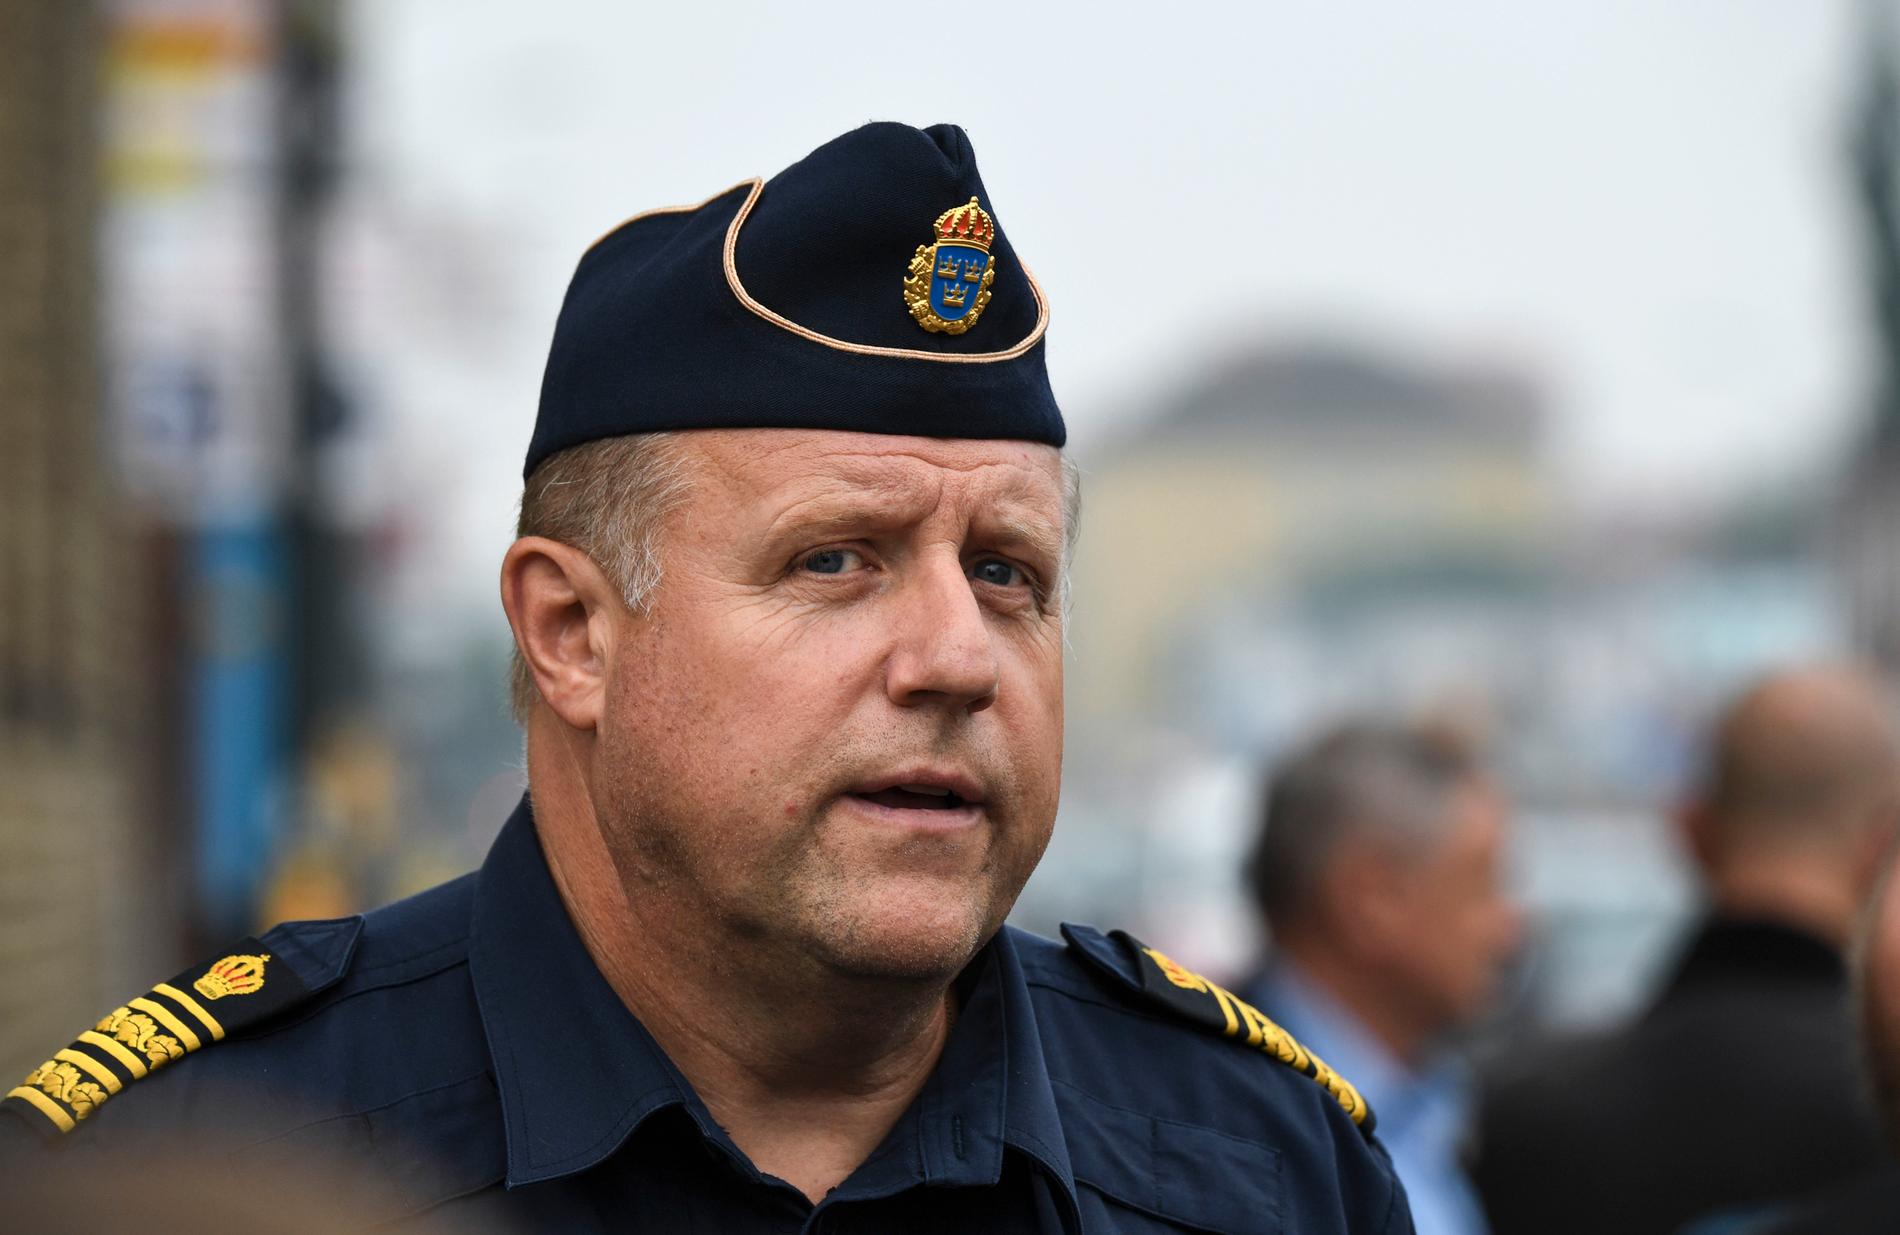 Malmös polismästare Stefan Sintéus medverkade i mötet. Arkivbild.